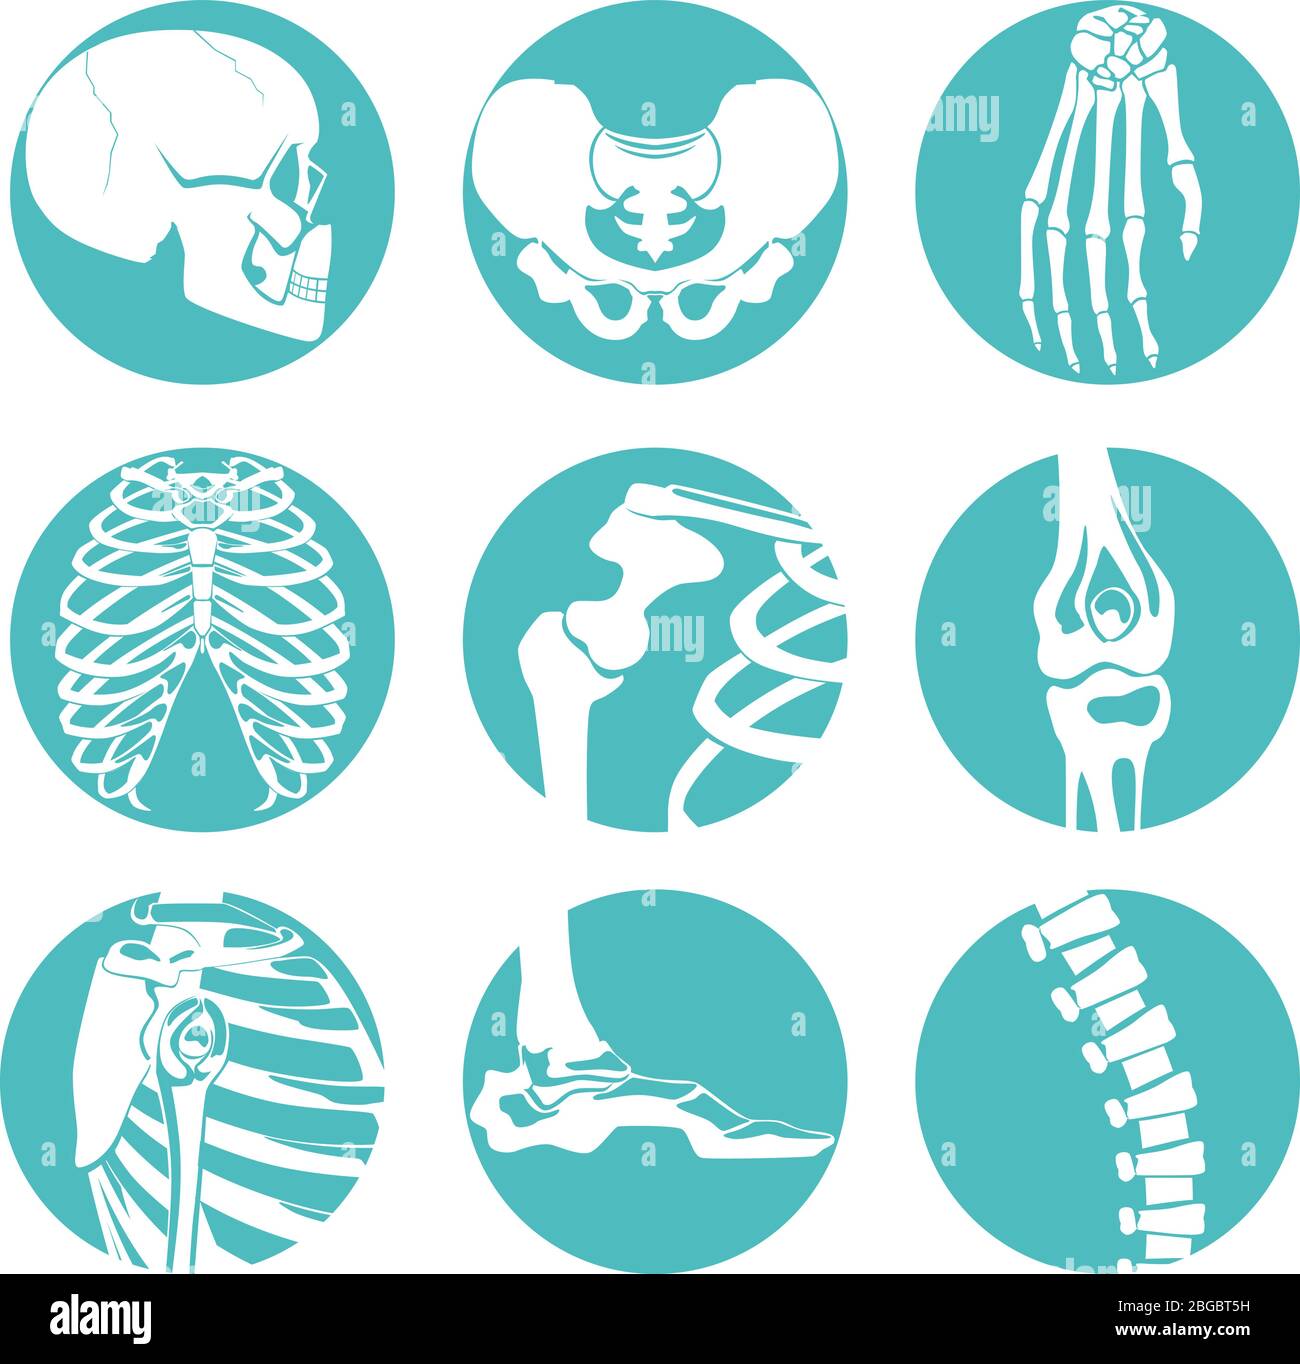 Illustrazioni dell'anatomia umana. Immagini ortopediche di scheletro e ossa diverse Illustrazione Vettoriale